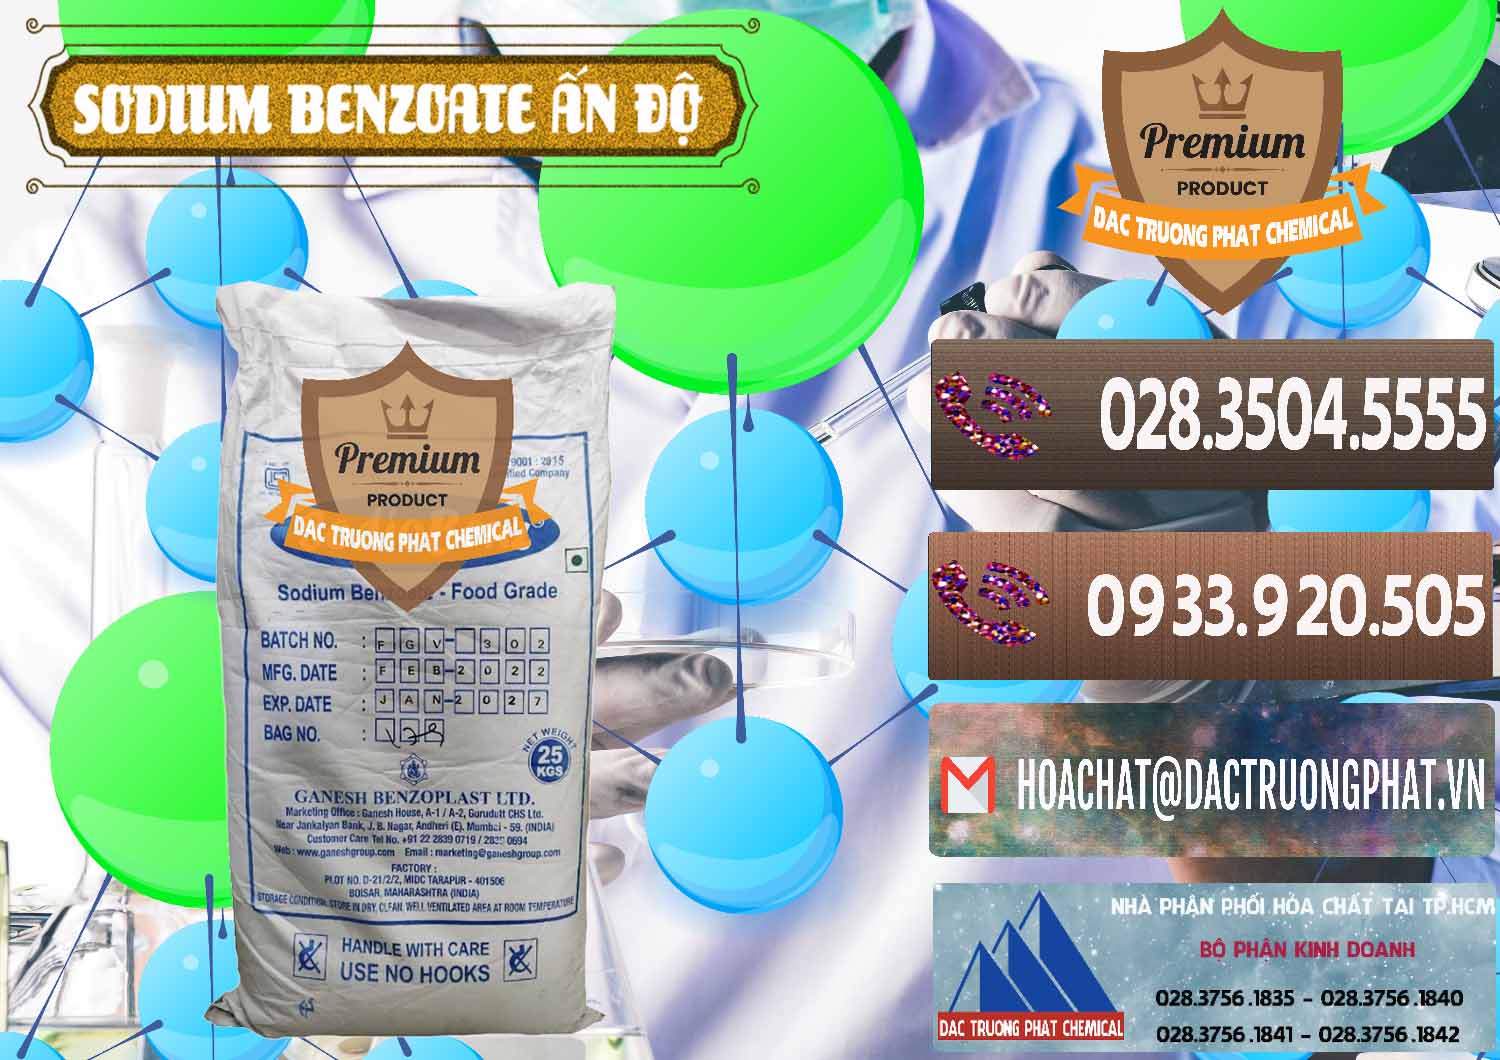 Cty chuyên bán và phân phối Sodium Benzoate - Mốc Bột Ấn Độ India - 0361 - Công ty chuyên kinh doanh ( phân phối ) hóa chất tại TP.HCM - hoachatviet.net